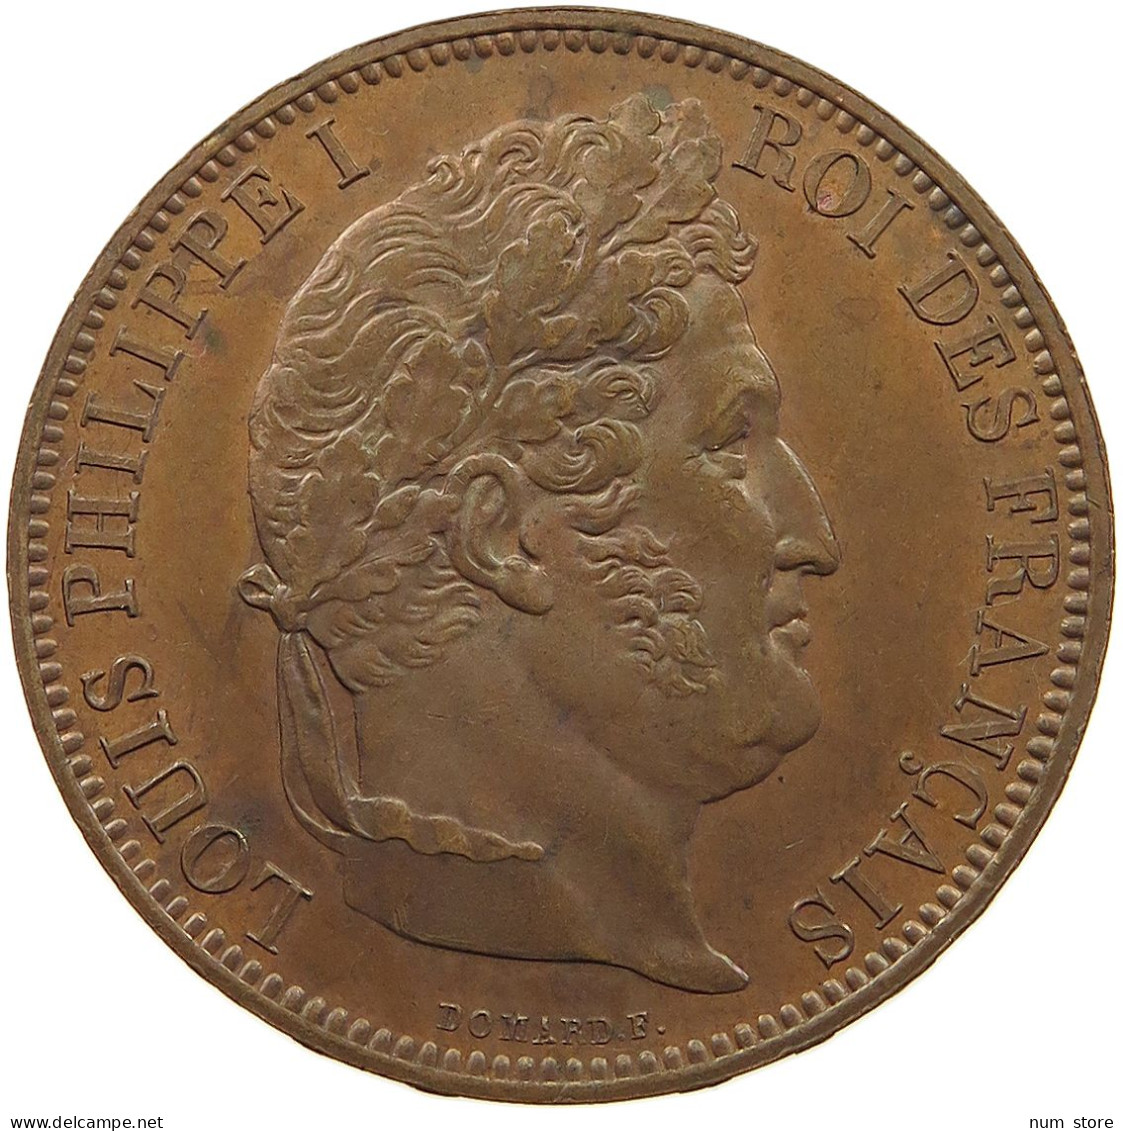 FRANCE 5 FRANCS 1831 LOUIS PHILIPPE I. (1830-1848) MODULE 5 FRANCS 1831 VISIT OF ROUEN MINT #T079 0143 - 5 Francs